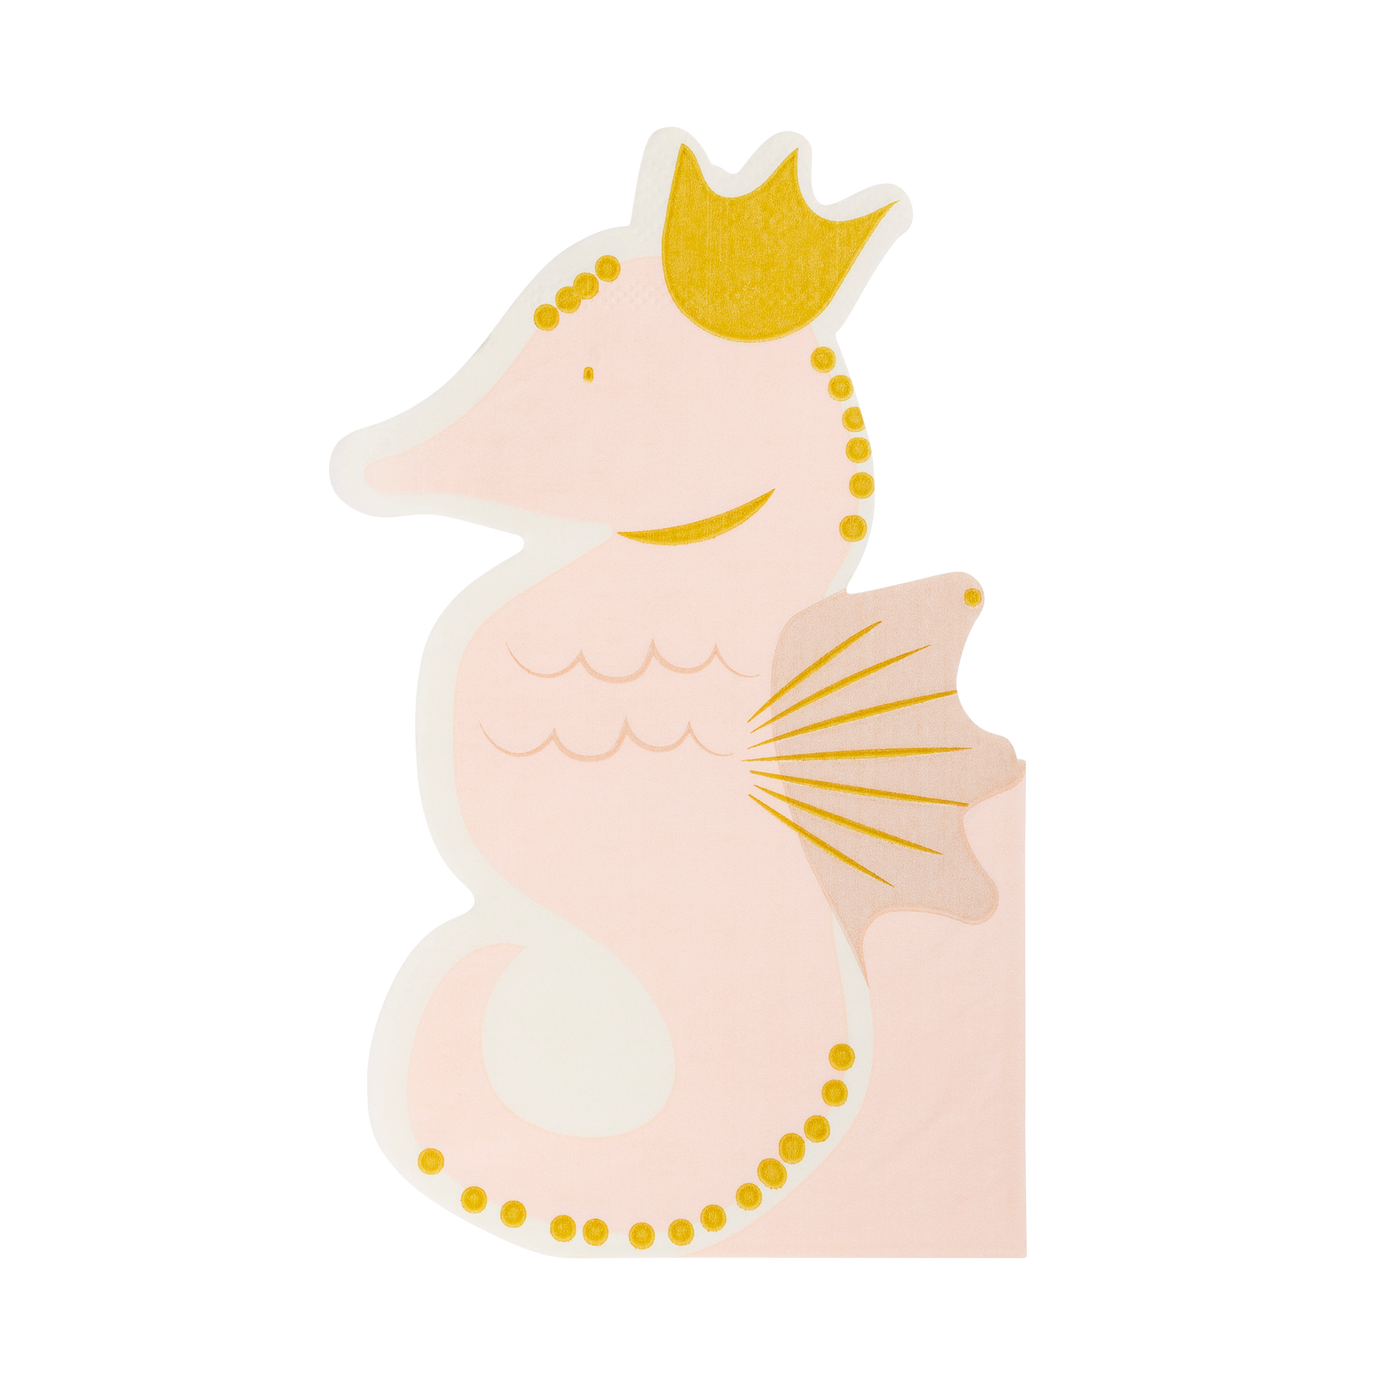 SEA1039 - Seahorse Shaped Napkin